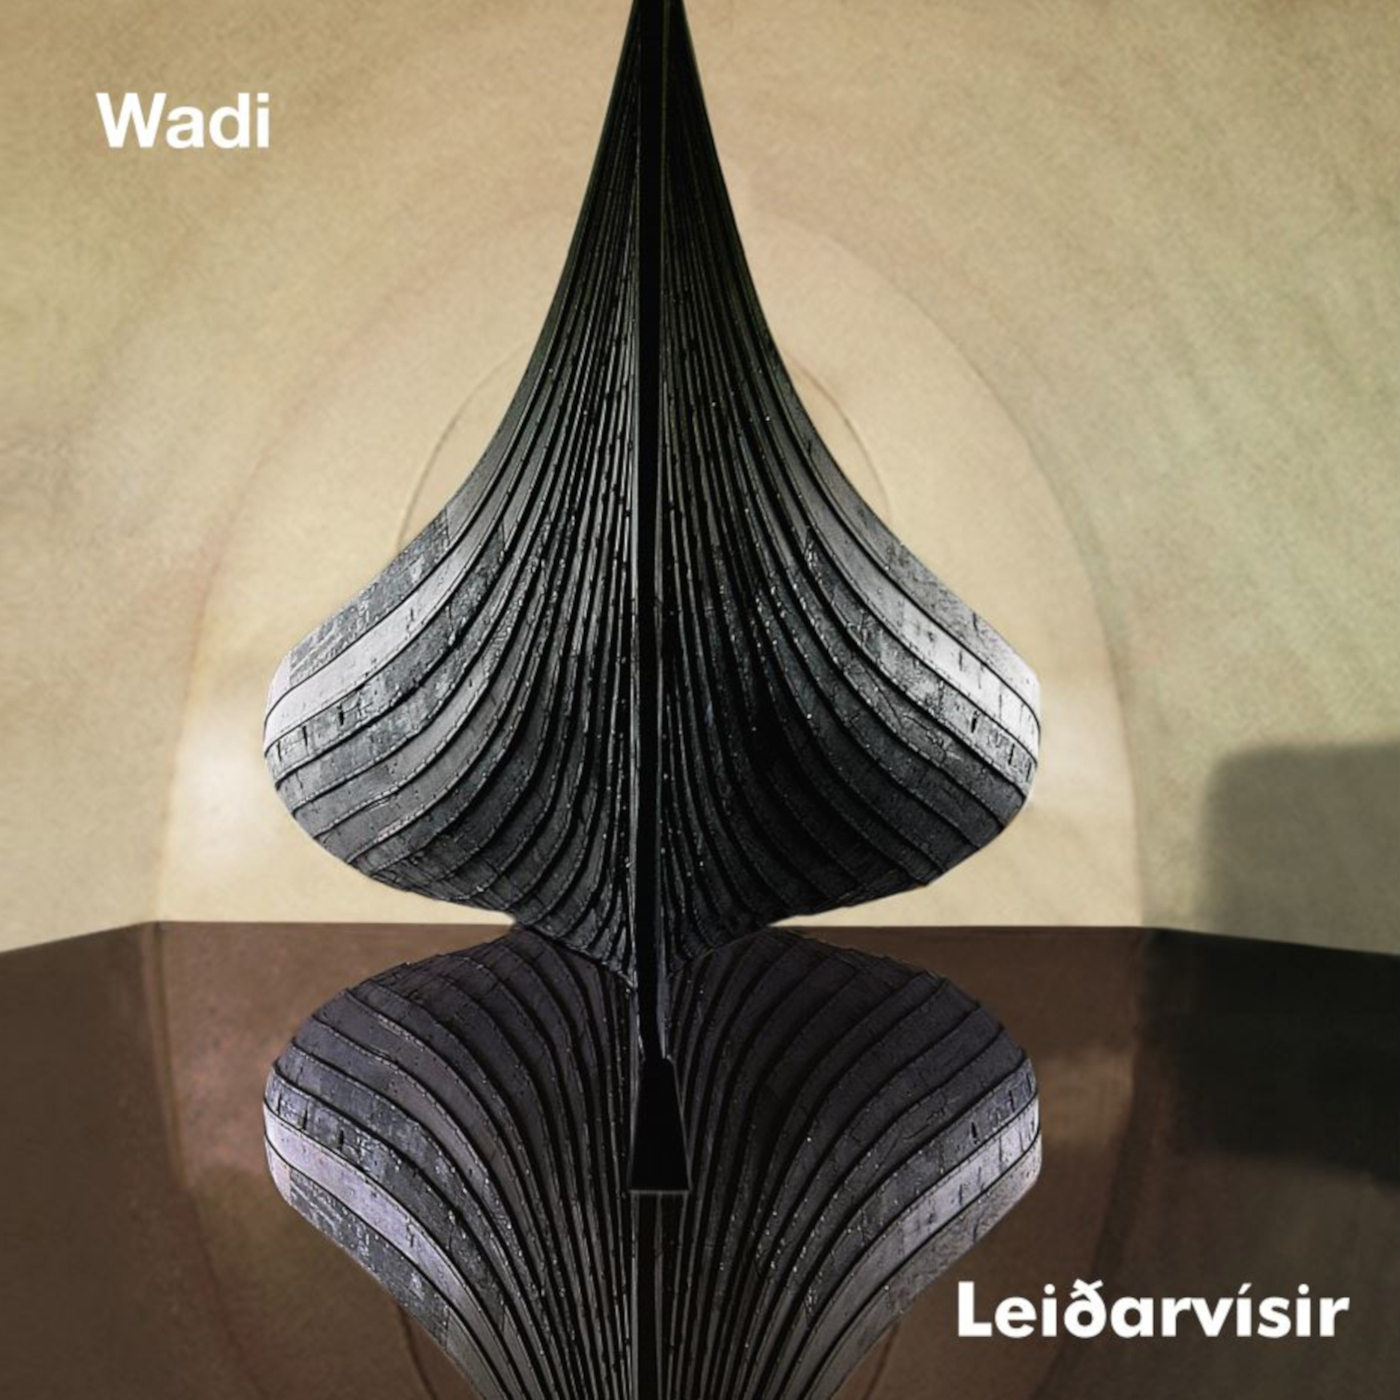 Wadi |Leiðarvísir | album cover | art: Per Barclay